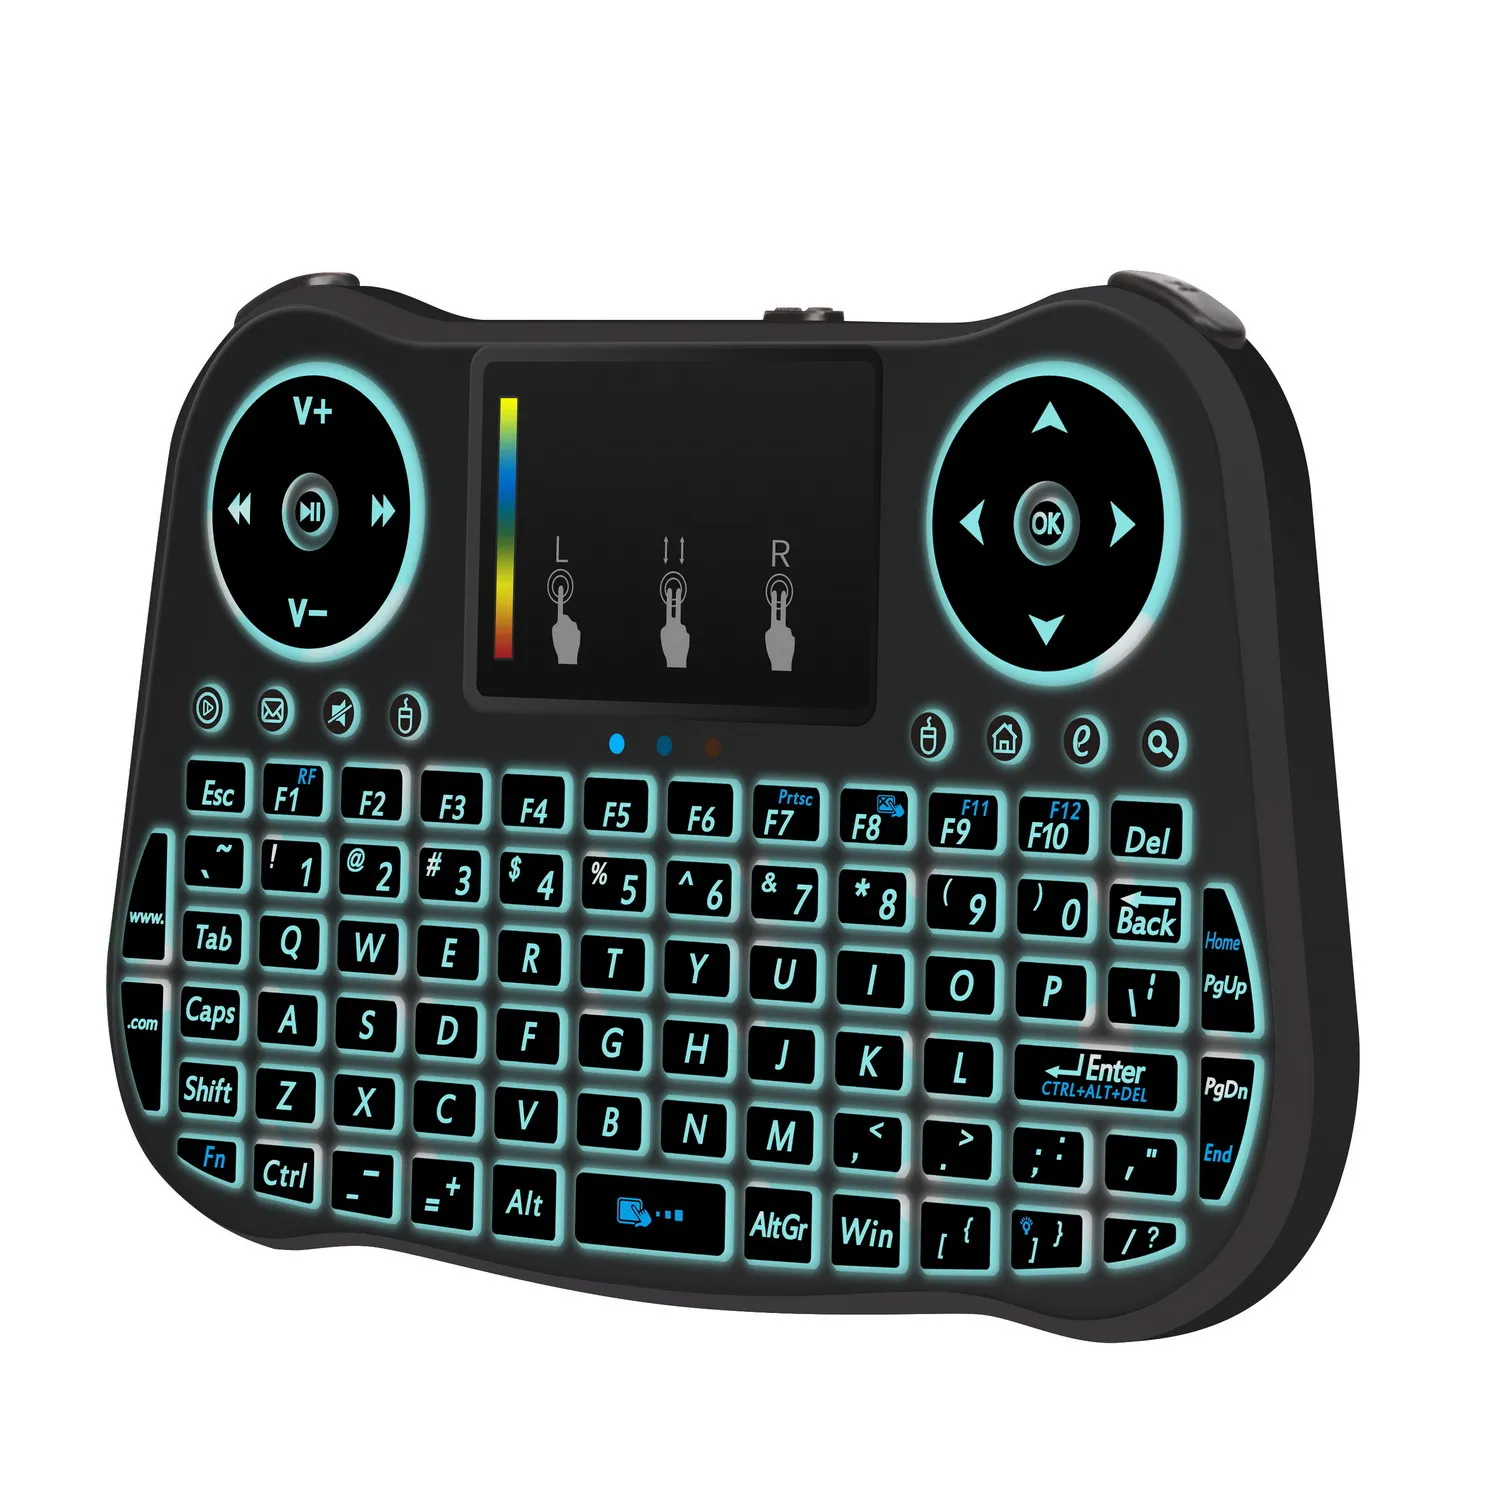 MINI MT08 2,4 GHz Drahtlose Tastatur 7 farbe hintergrundbeleuchtung Englisch Fernbedienung Touchpad Für Android TV Box Tablet PC Smart TV PK i8